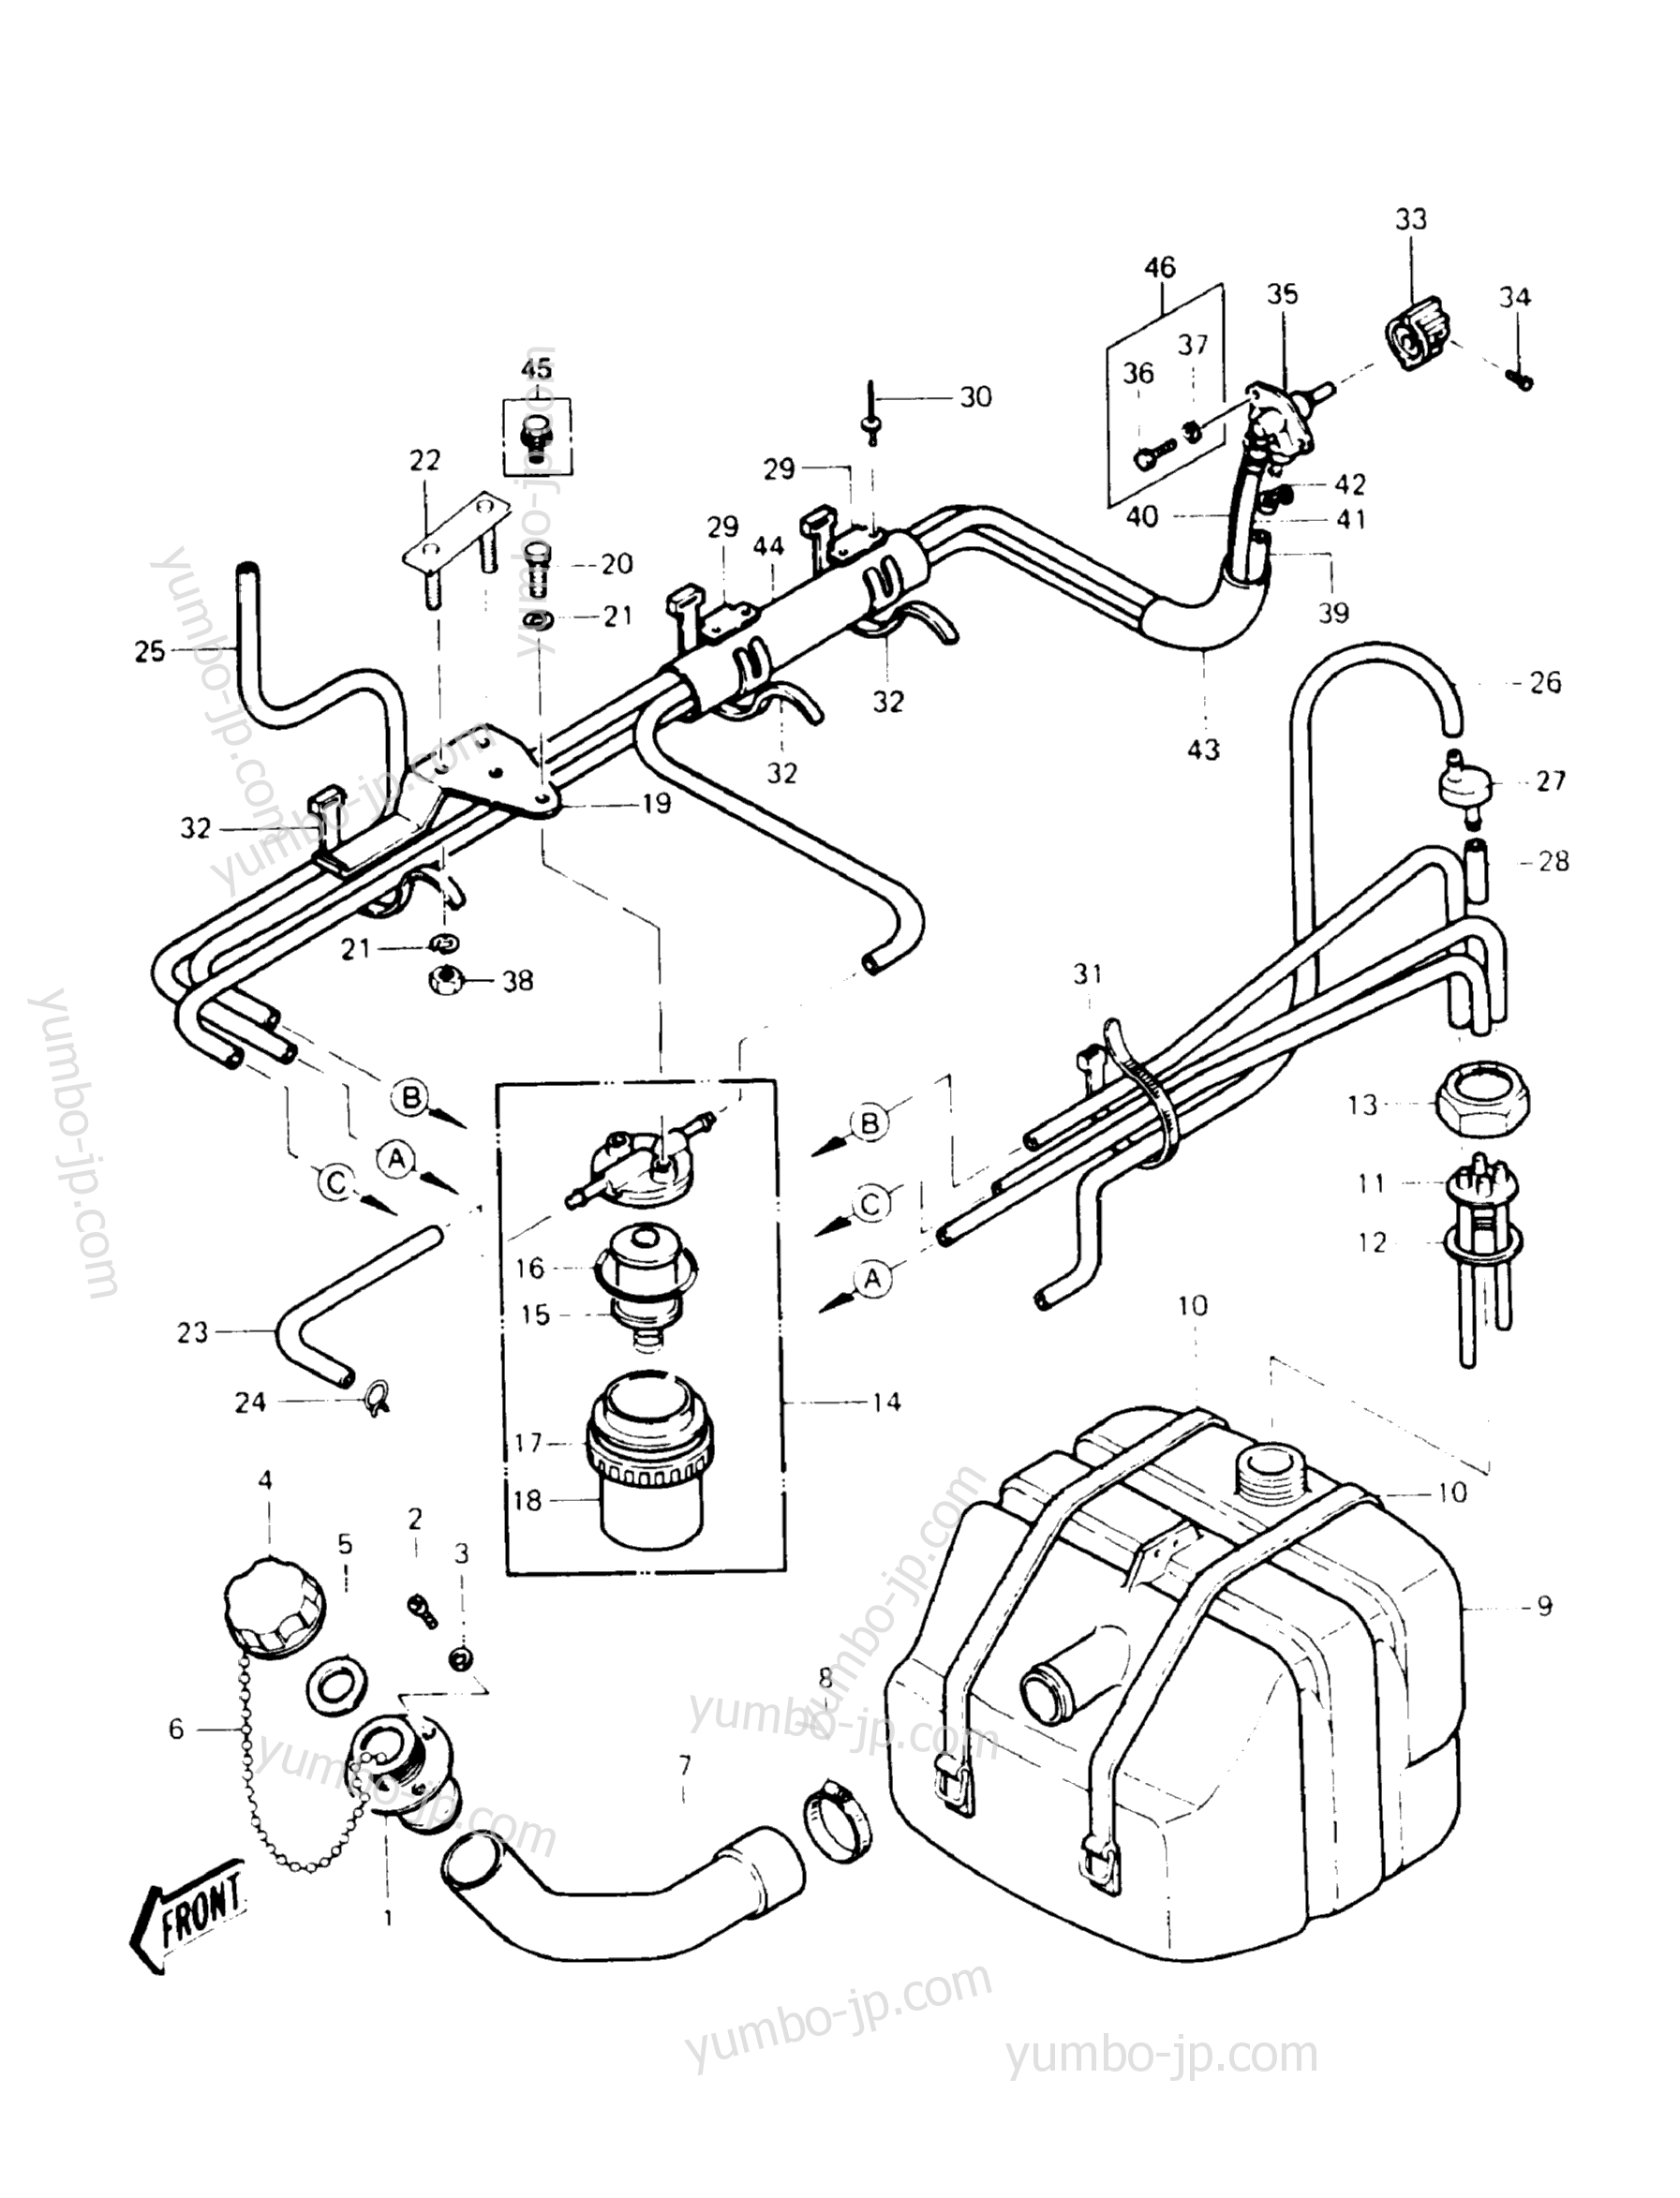 Топливный бак для гидроциклов KAWASAKI JST SKI 440 (JS440-A13) 1989 г.